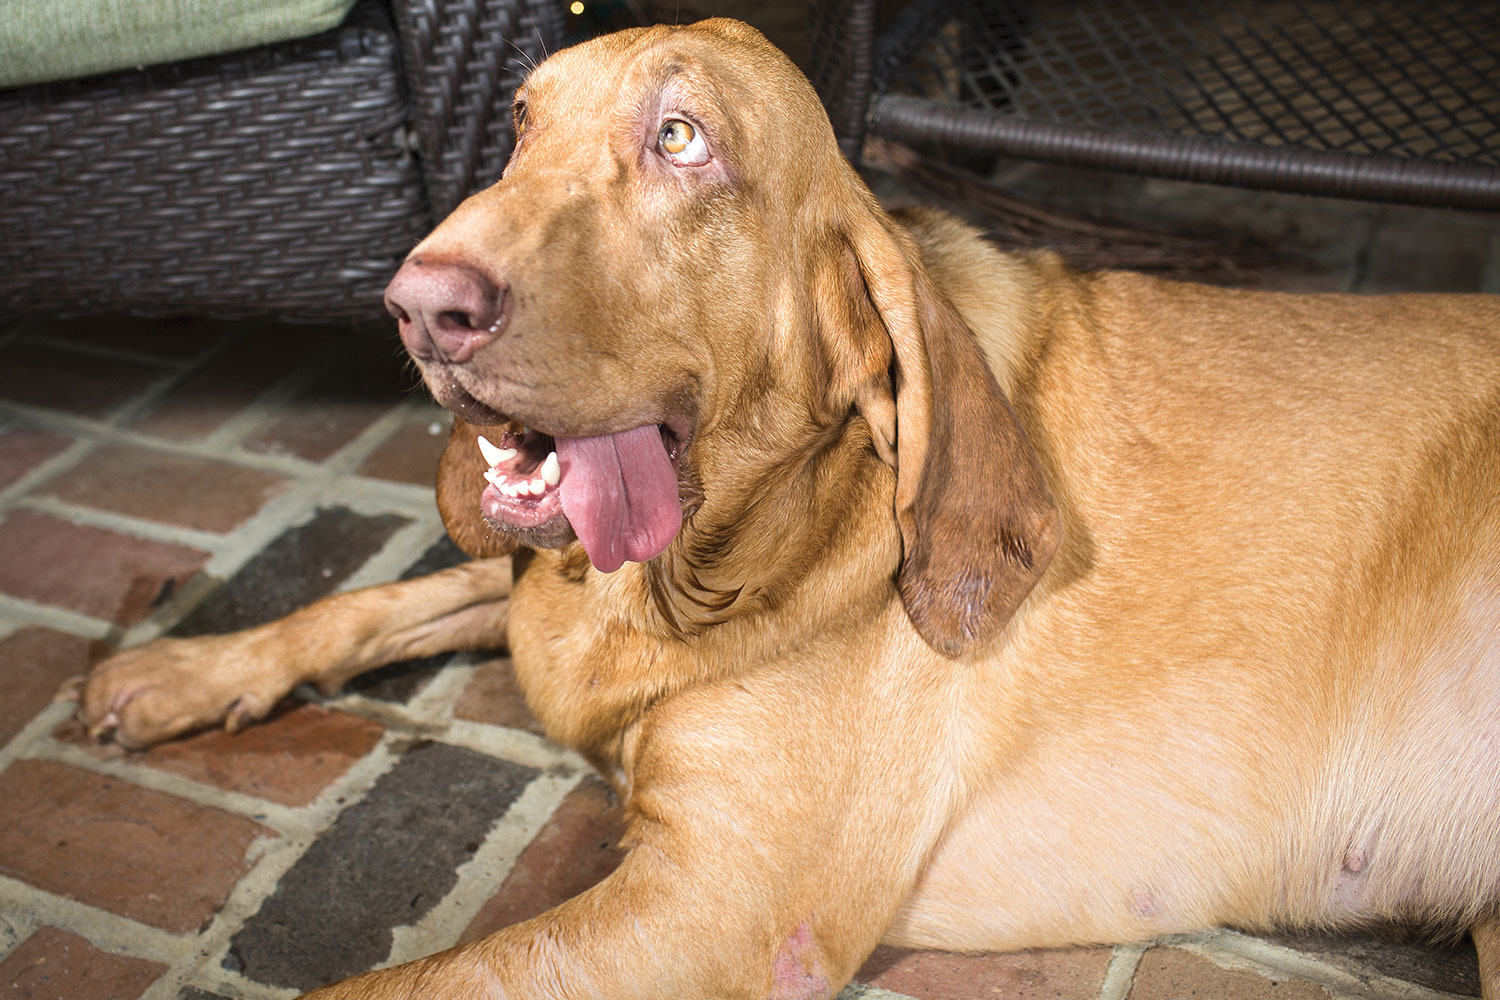 hound dog rests on brick floor